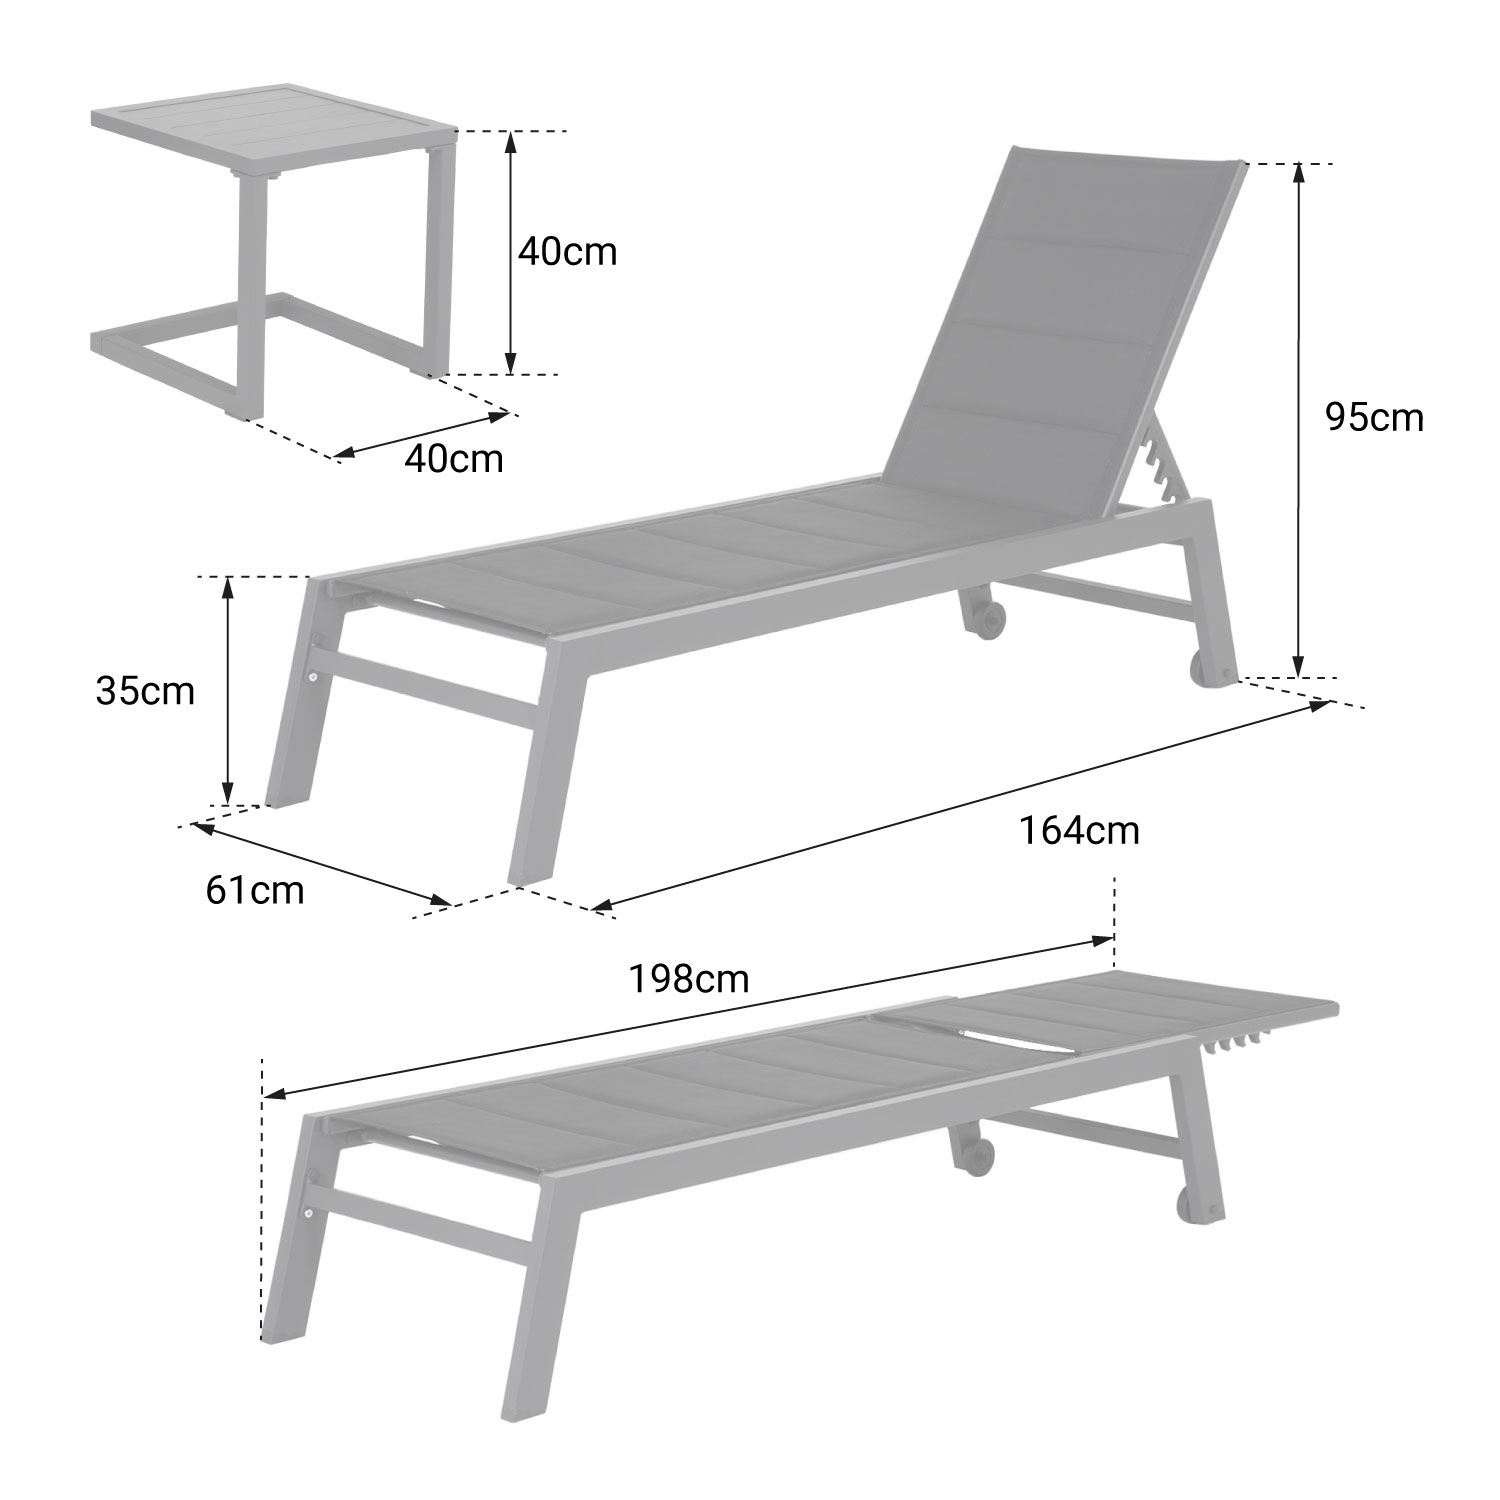 Set bain de soleil et table d'appoint BARBADOS en textilène gris - aluminium blanc